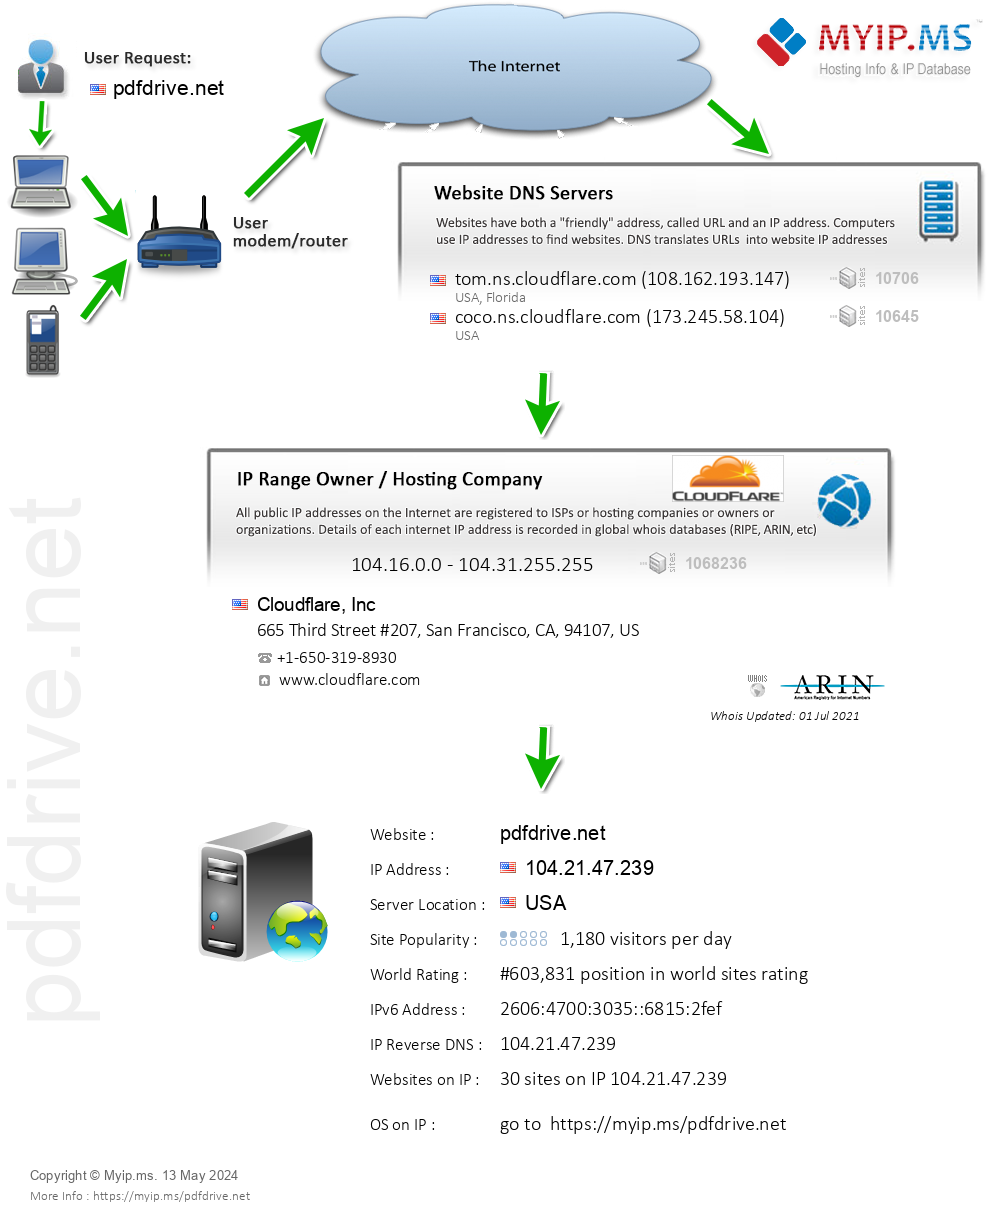 Pdfdrive.net - Website Hosting Visual IP Diagram